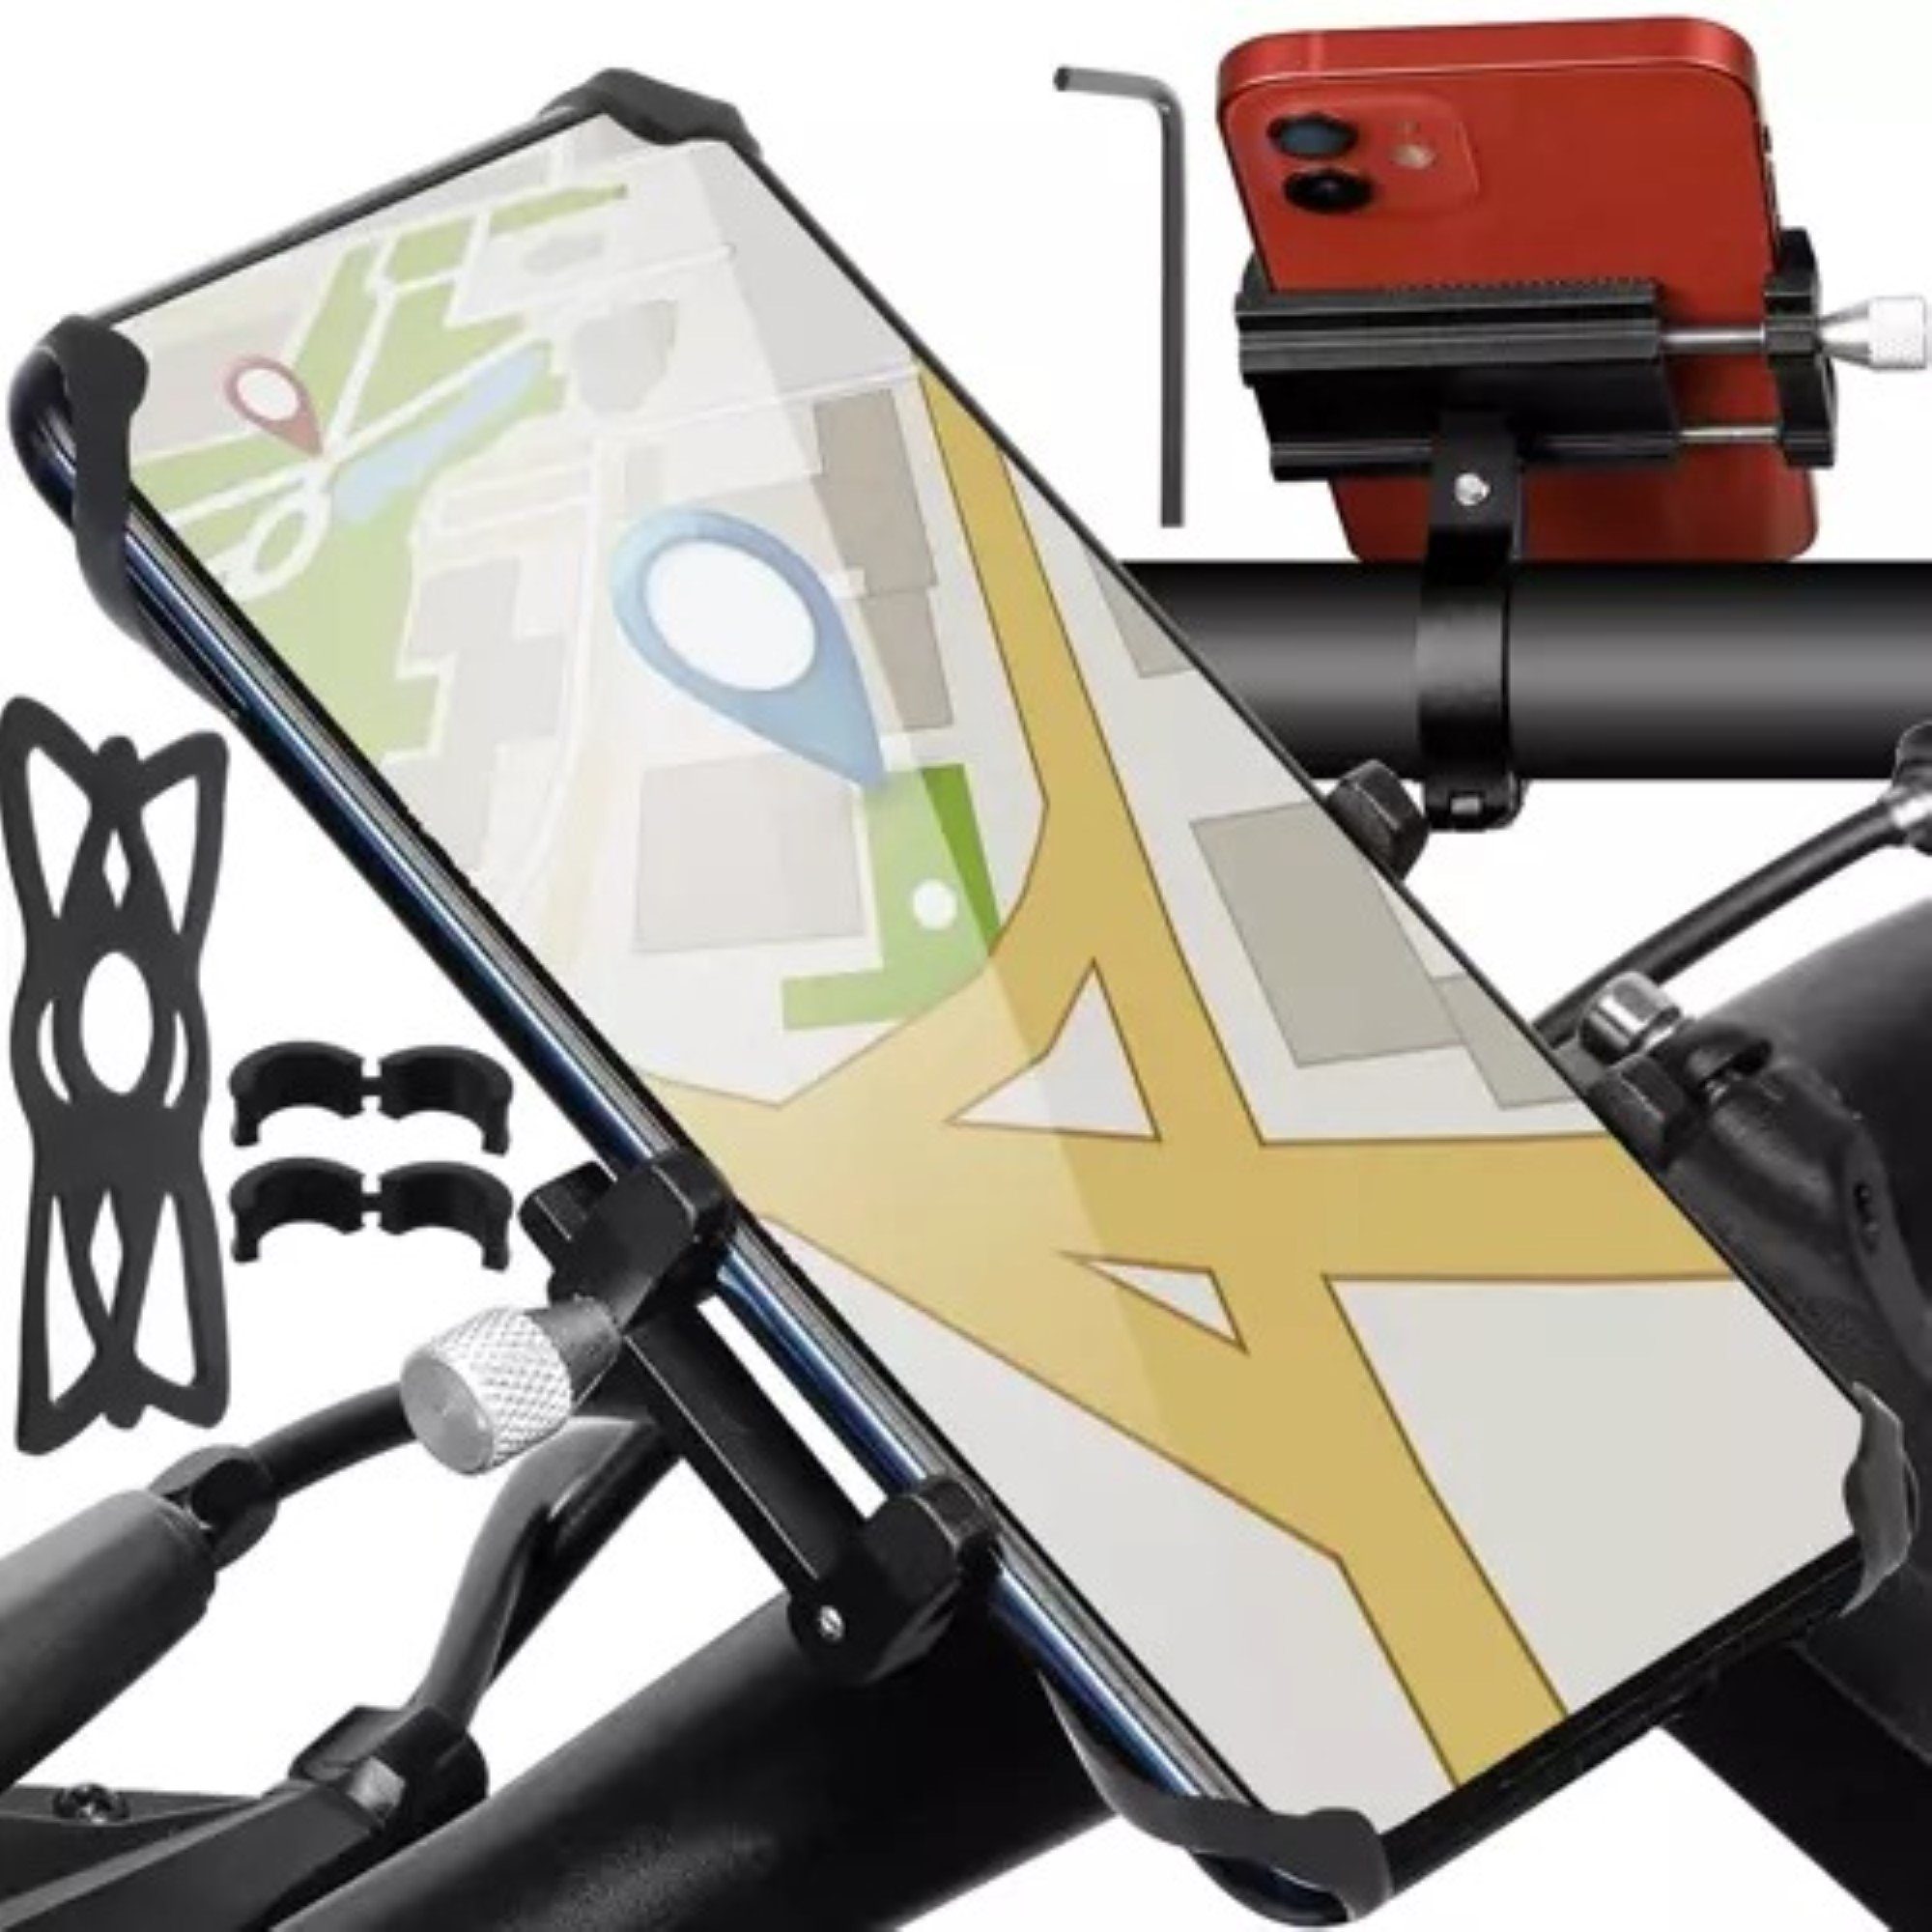 Trizand Fahrrad-Halterung: Sichere Handybefestigung für unterwegs Smartphone-Halterung, (bis 7,00 Zoll, Universal-Fahrradhalterung mit elastischem Silikon-Gummiband für sicheren Halt., Fahrradhalterung für Smartphone bis zu 7 Zoll, Universelle Fahrradhalterung mit Silikon-Gummiband für sicheren Halt)